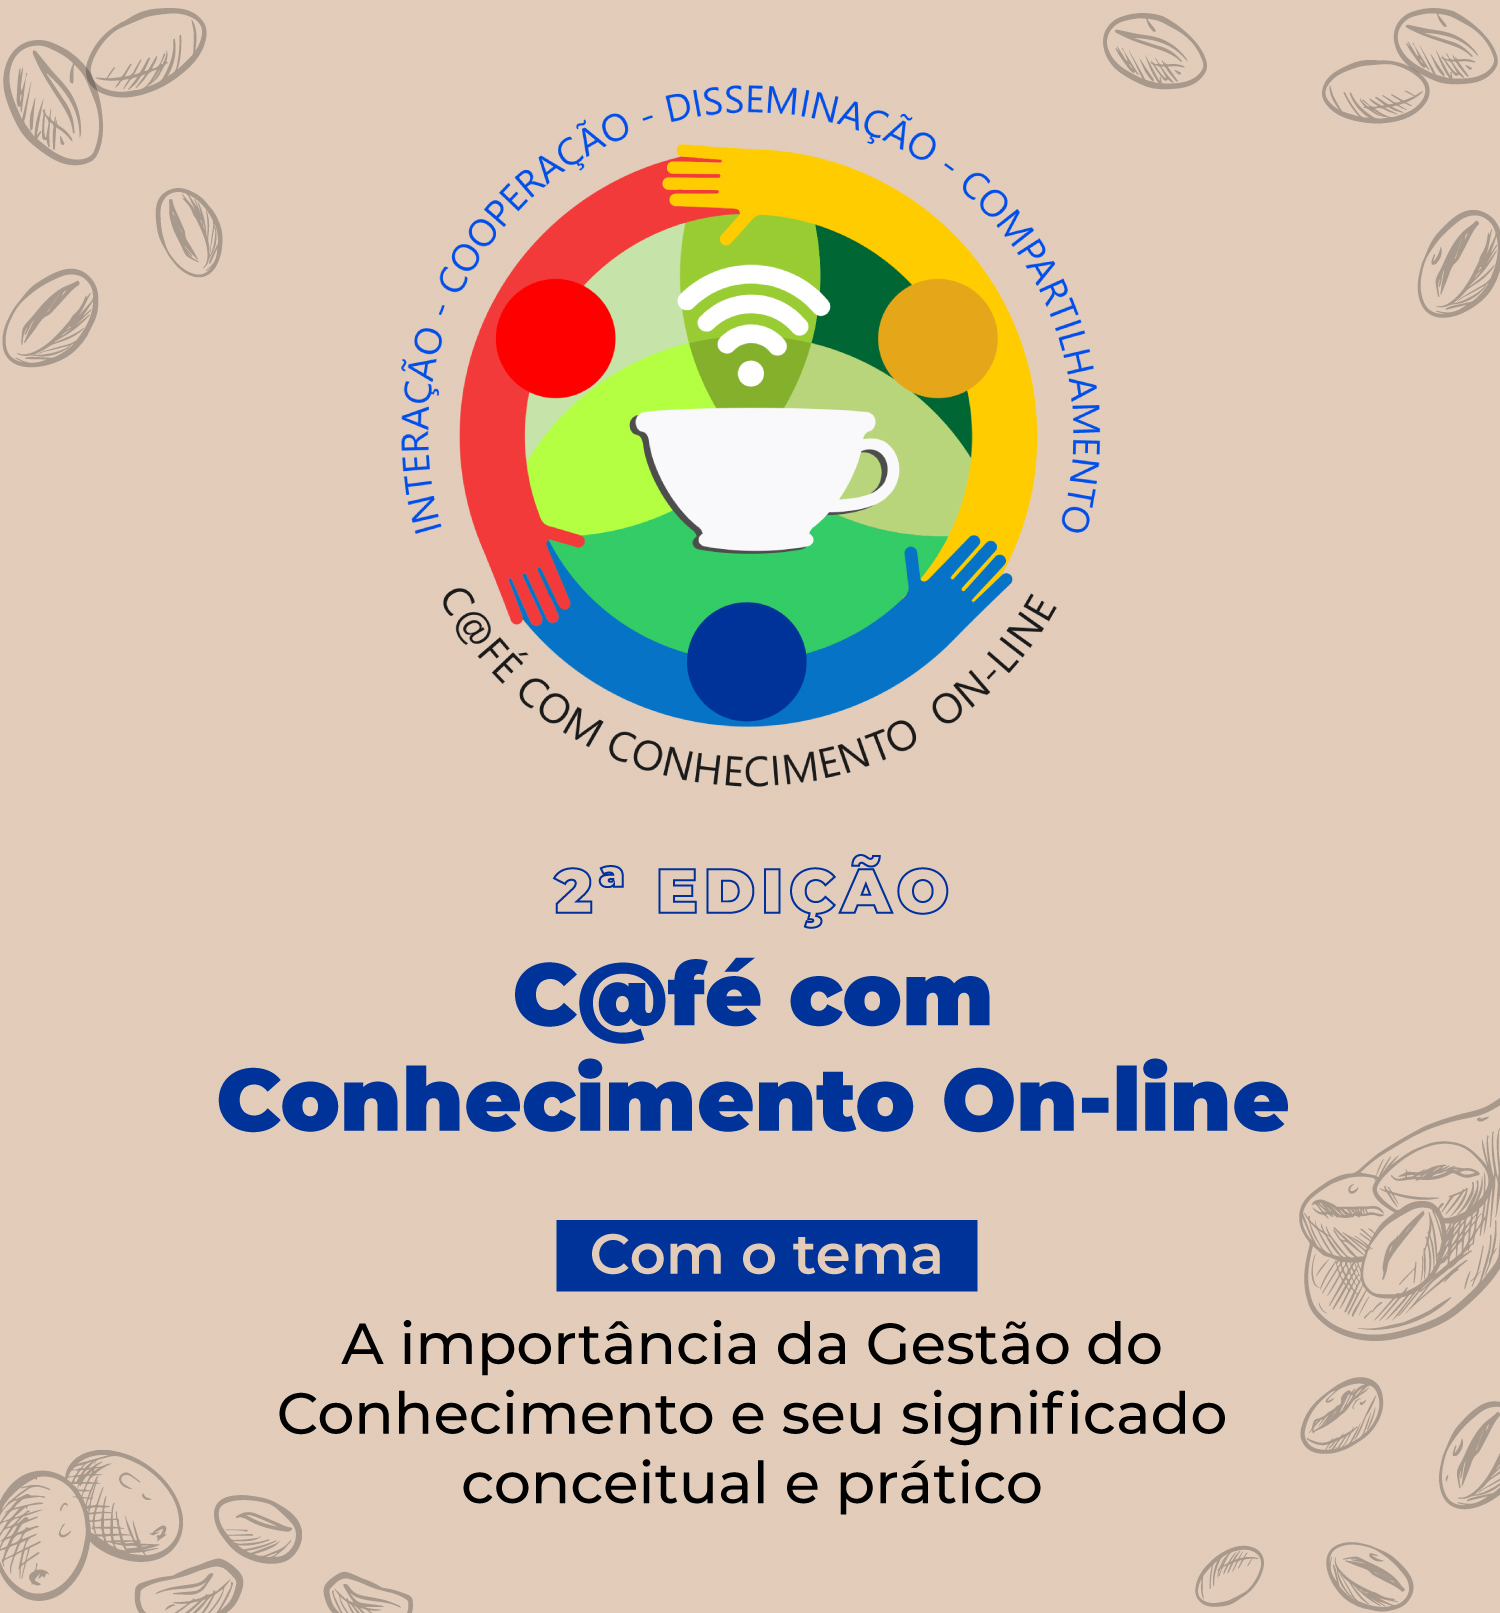 INSTITUCIONAL: Vem aí a 2ª Edição do Café com Conhecimento on-line